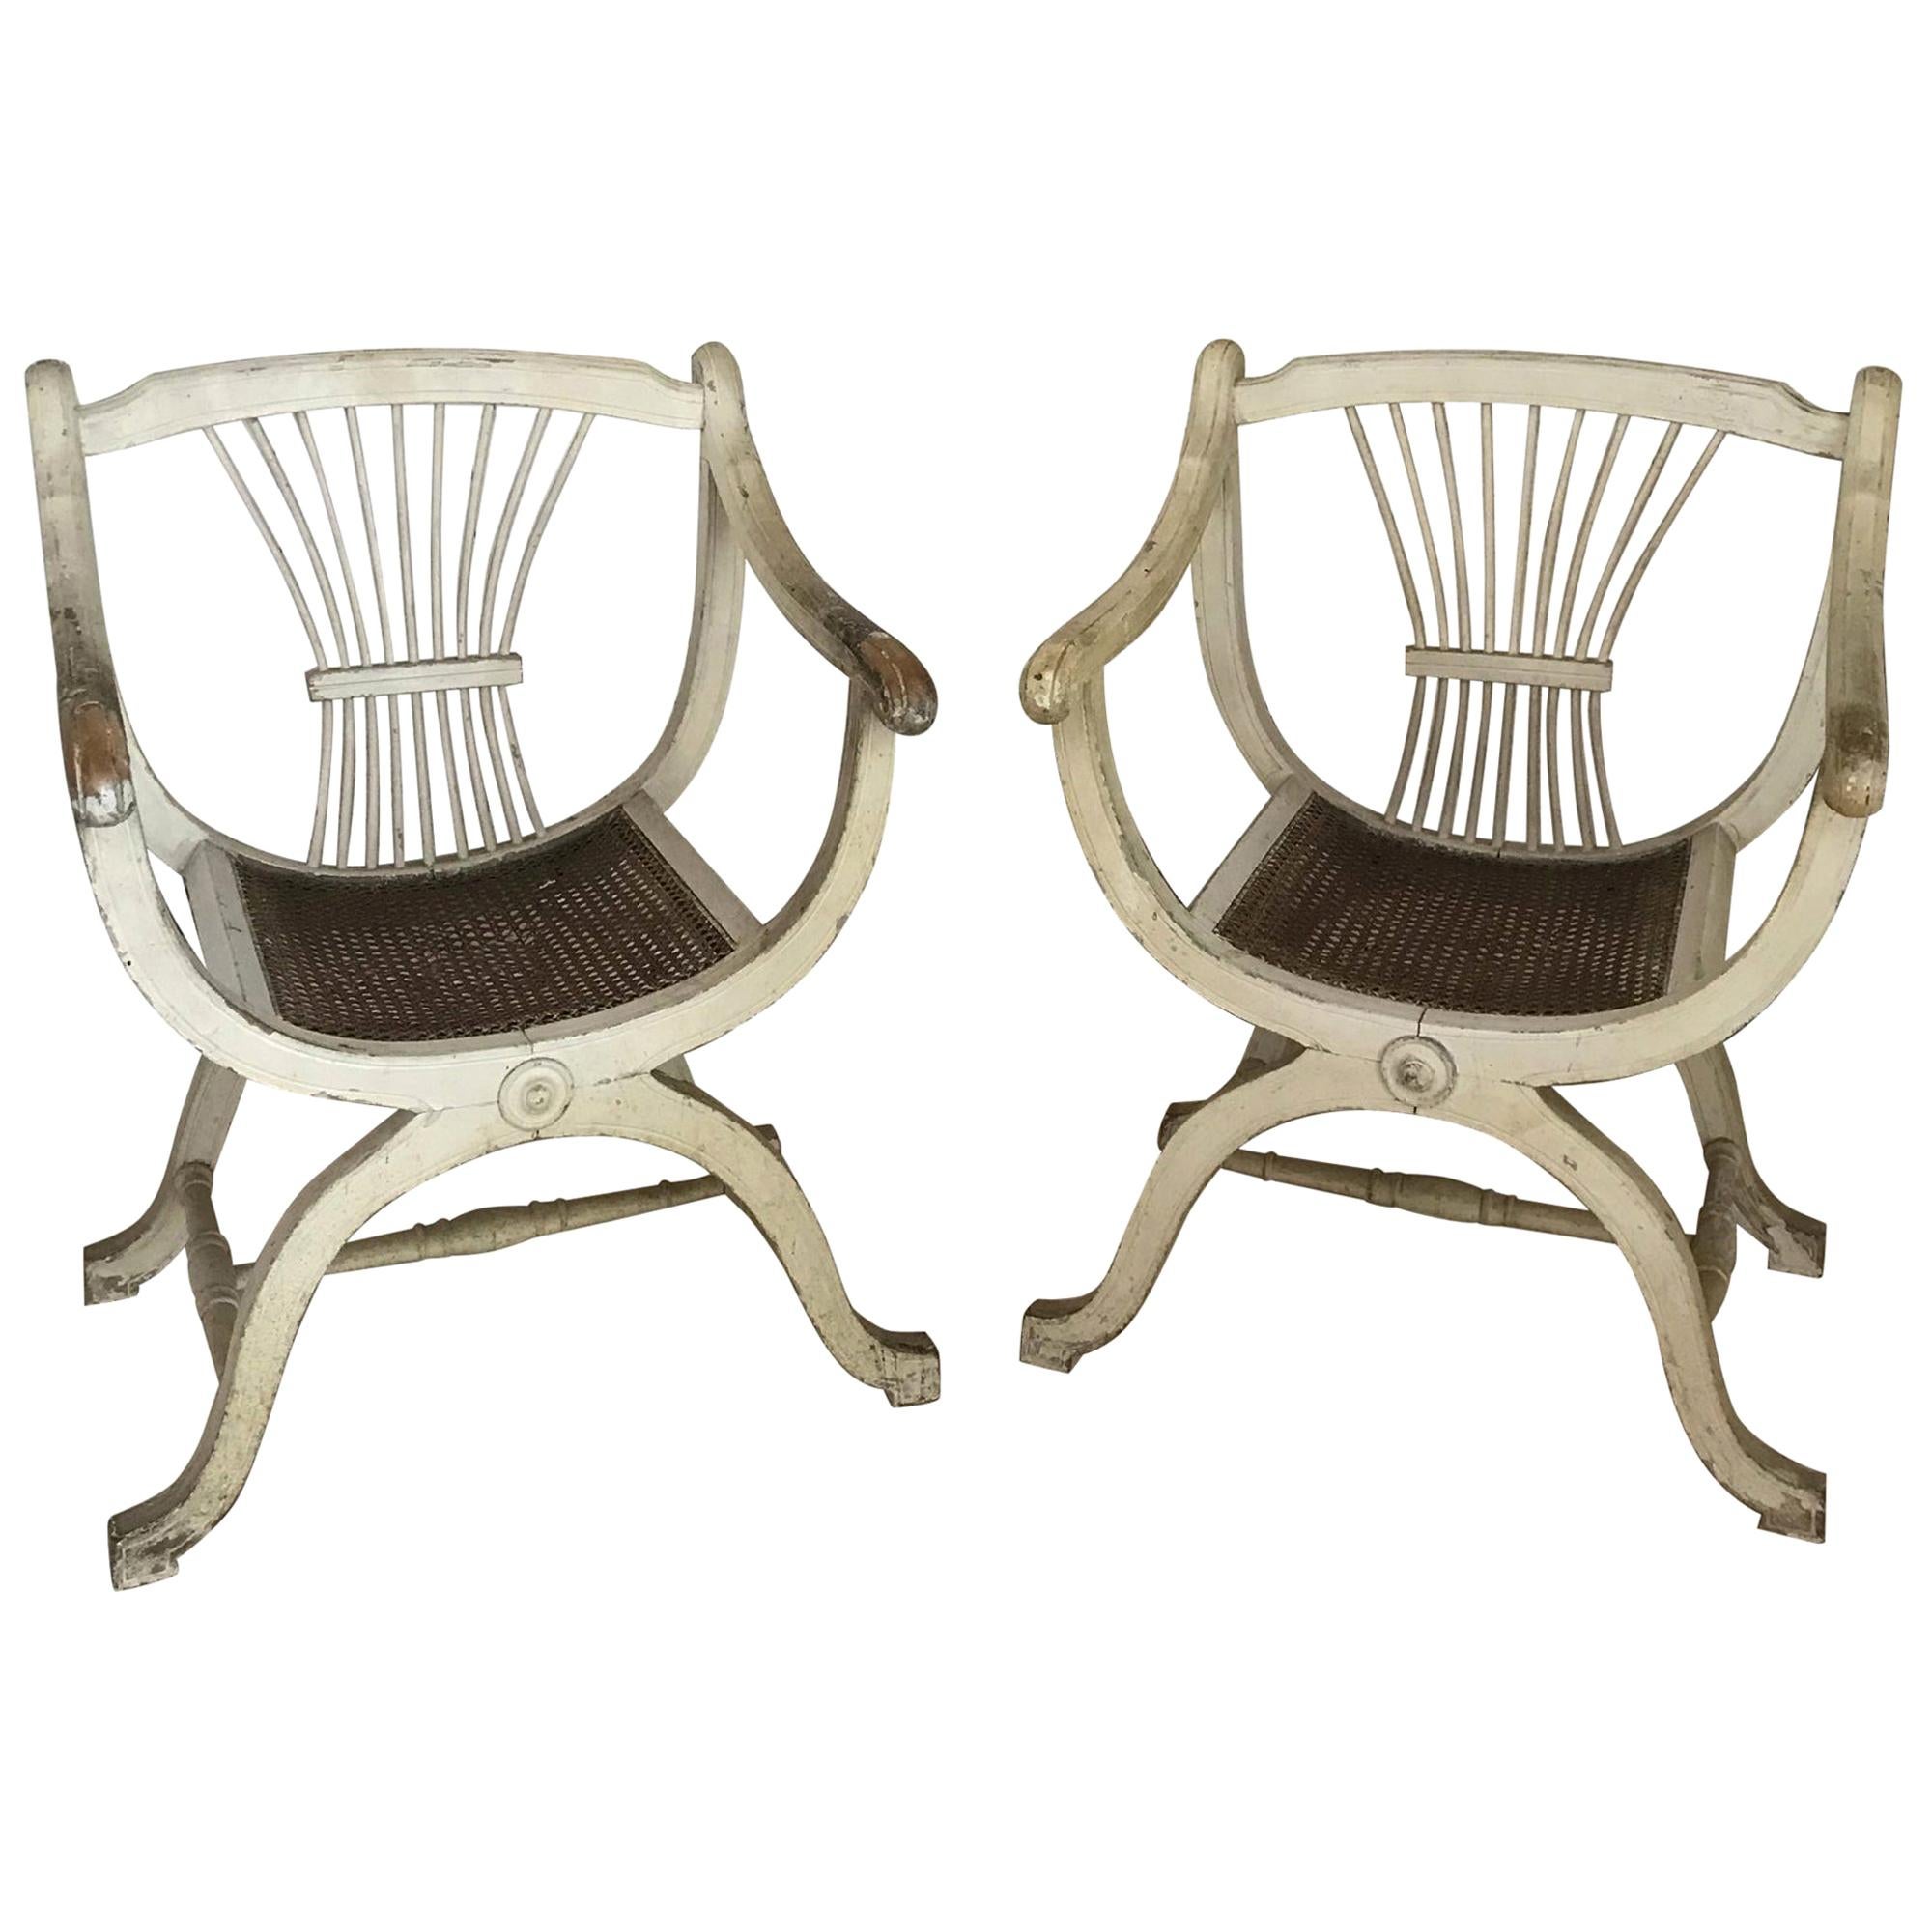 Ein Paar französische Sessel, weiß, geschnitzte Lehne, antik, Empire, frühes 20. Jh.